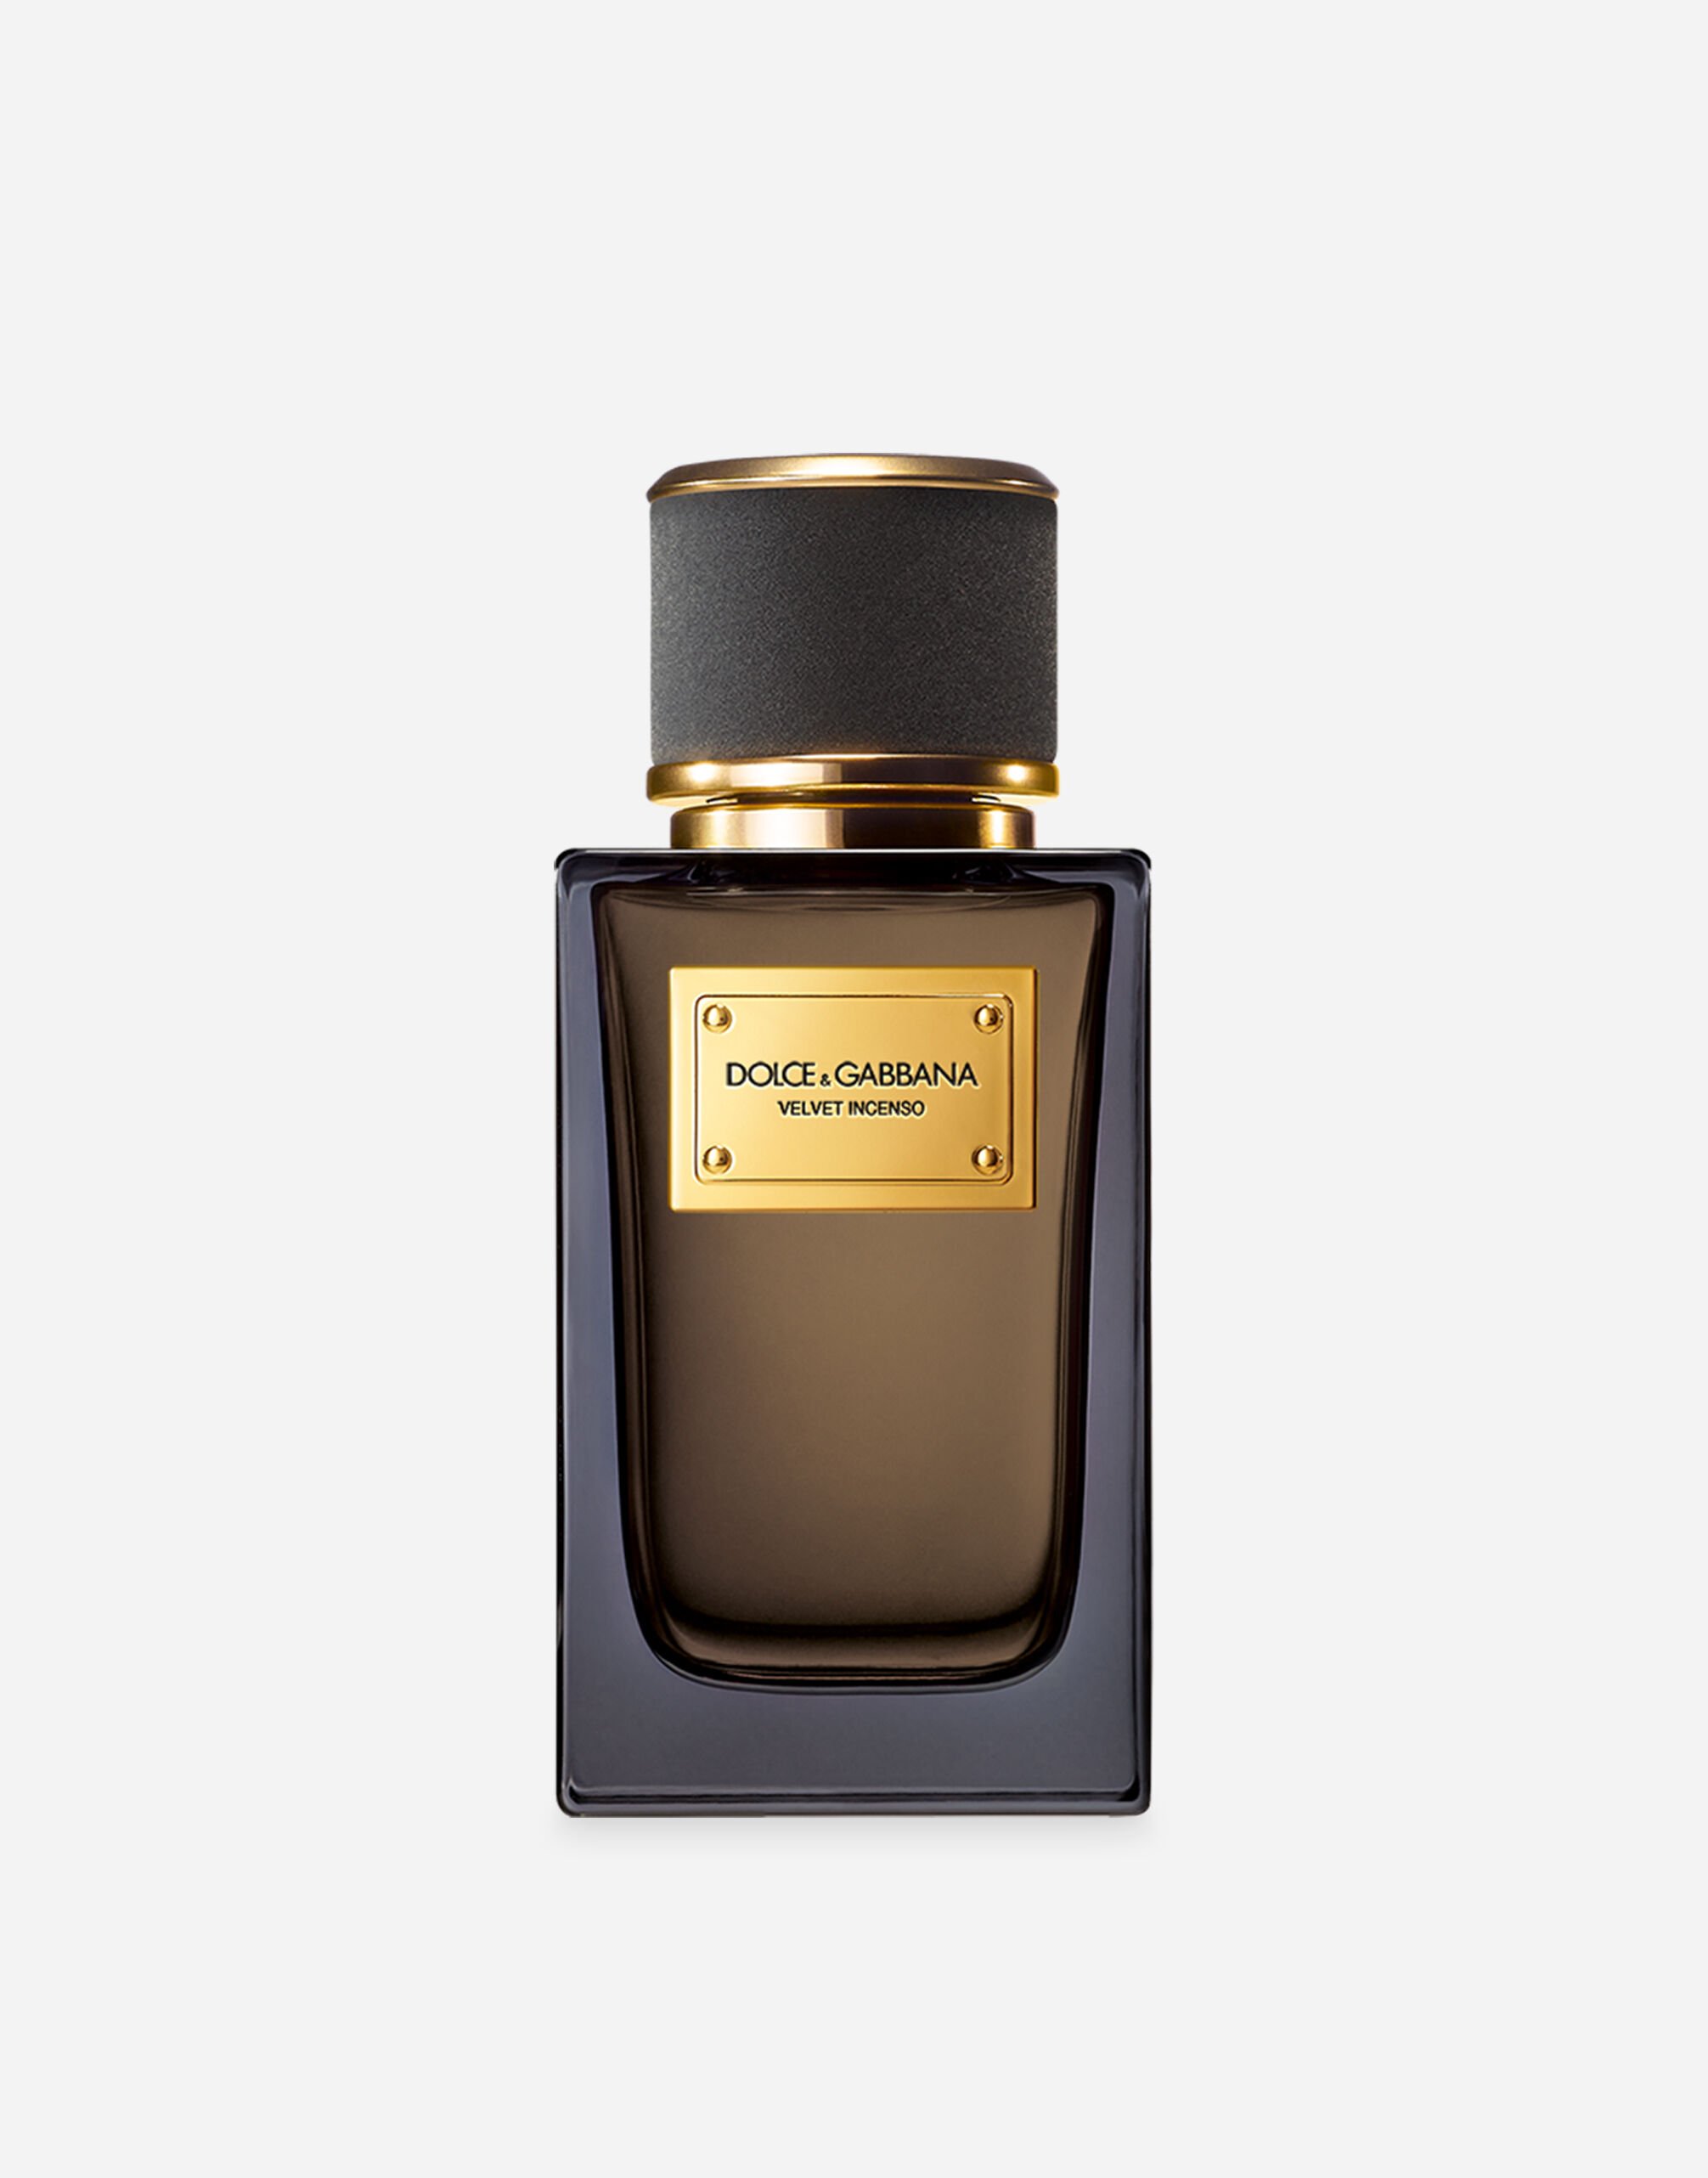 Dolce & Gabbana Velvet Incenso Eau de Parfum - VP001UVP000